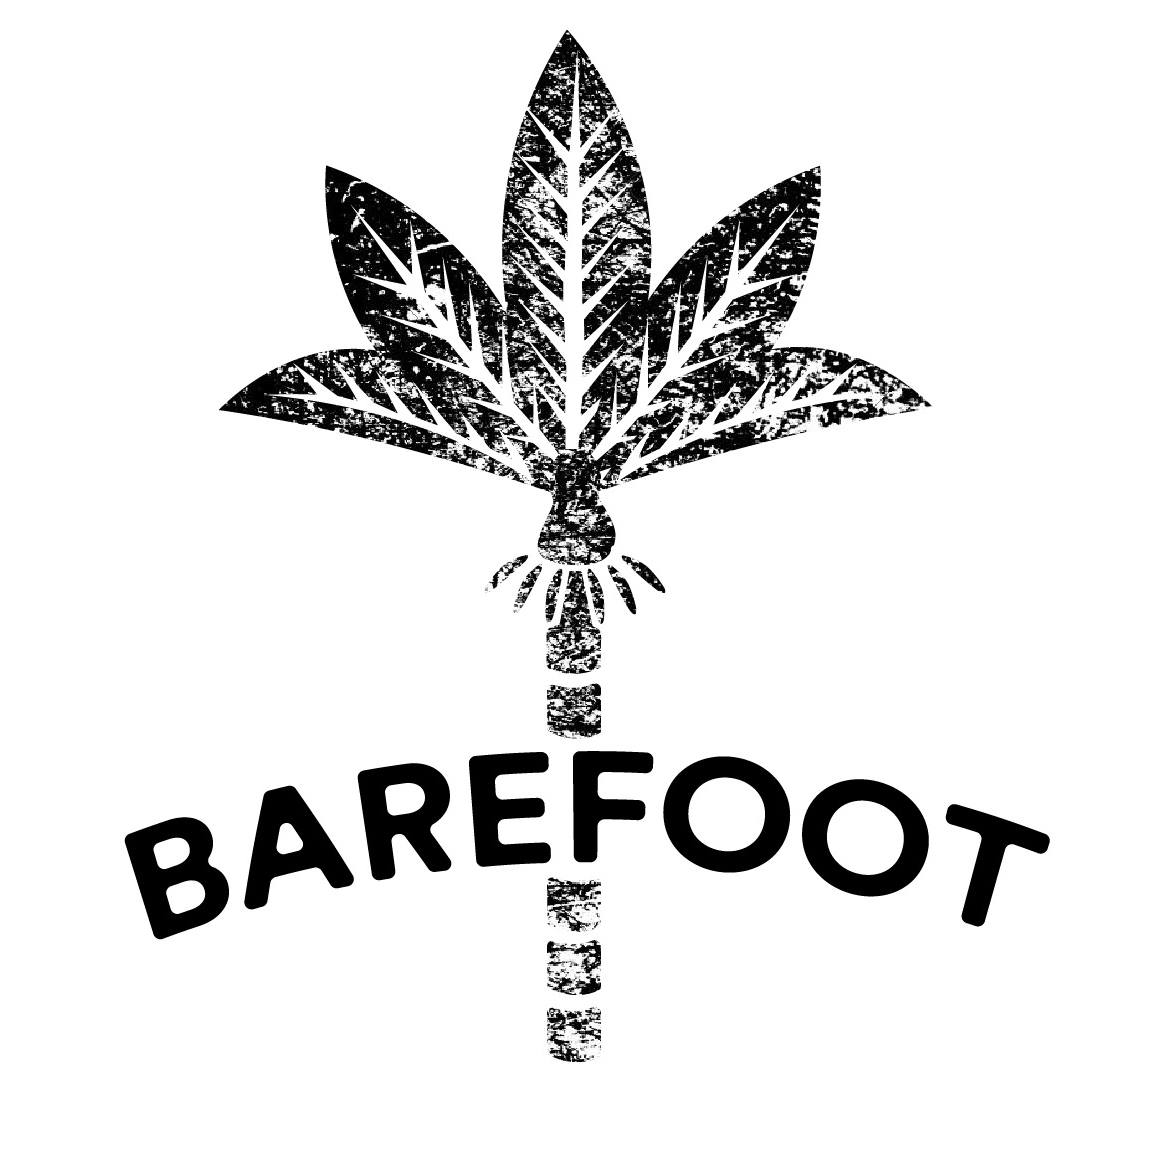 ”Barefoot